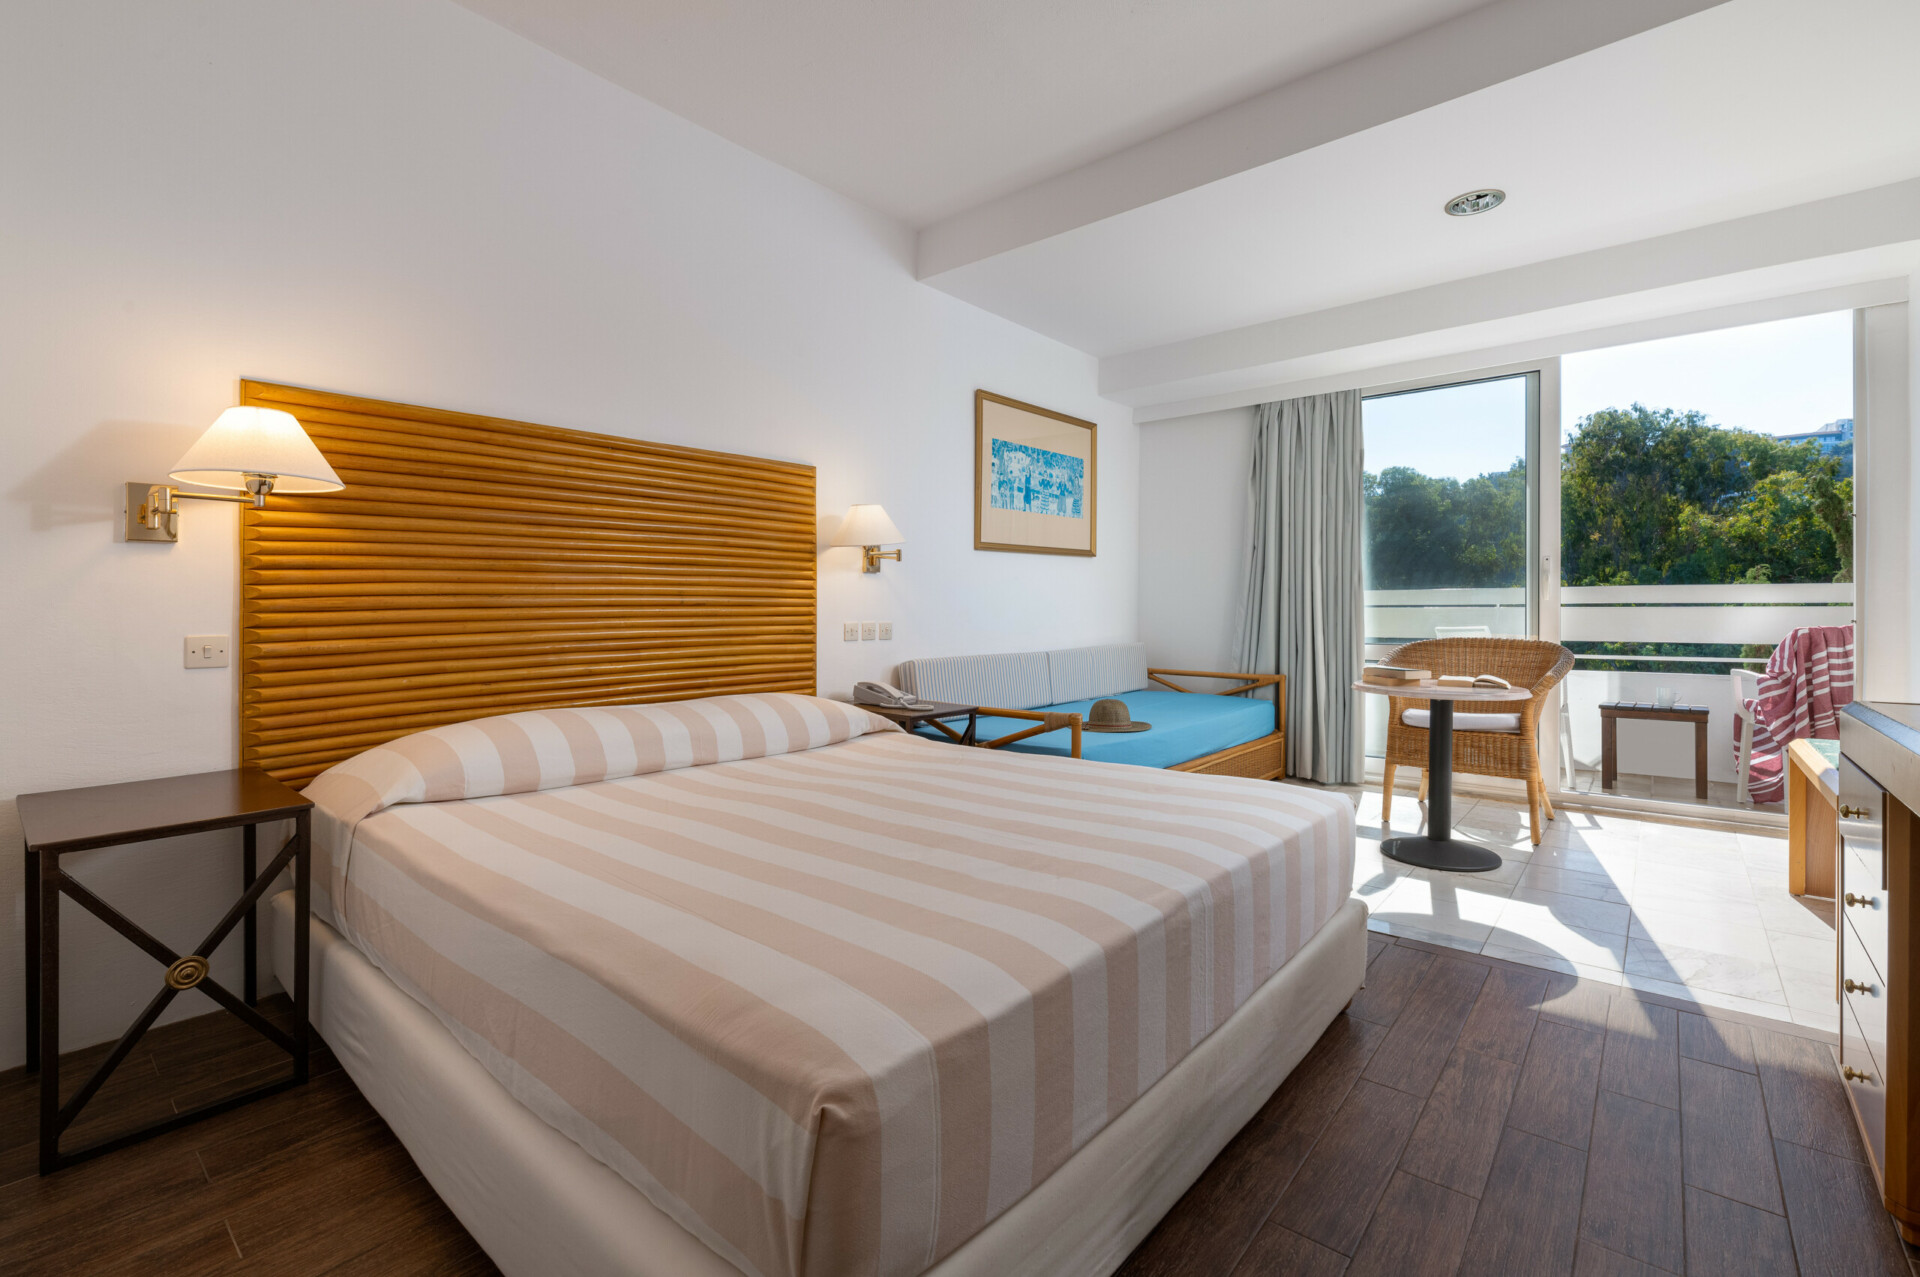 Άνετη εικόνα του τρίκλινου δωματίου στο ξενοδοχείο Dionysos, με ένα διπλό κρεβάτι, έναν μονό καναπέ-κρεβάτι και ιδιωτικό μπαλκόνι με θέα στον κήπο